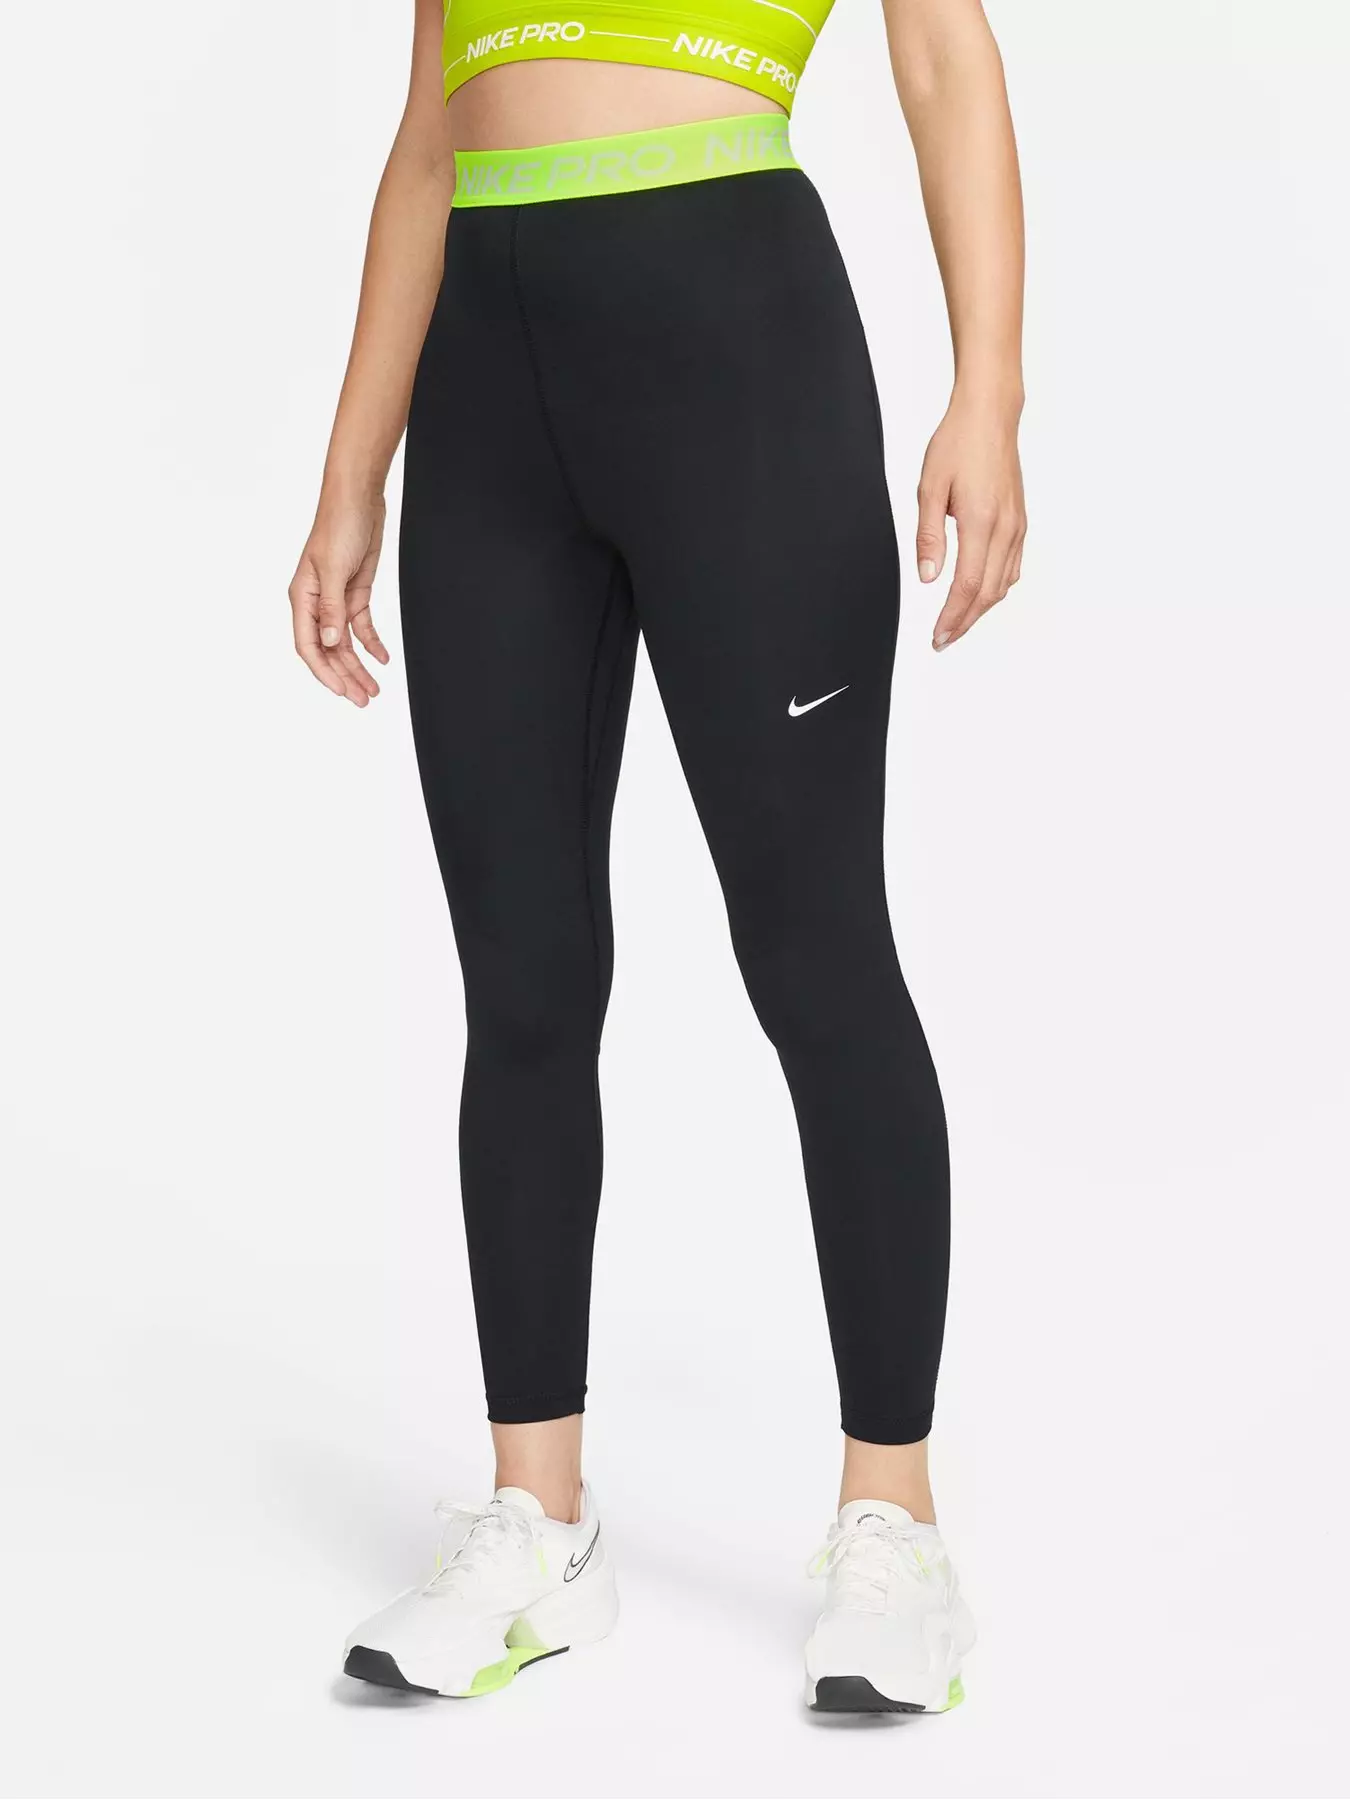 Nike Pro Womens XS Black Silver Shimmer Leggings Full Length